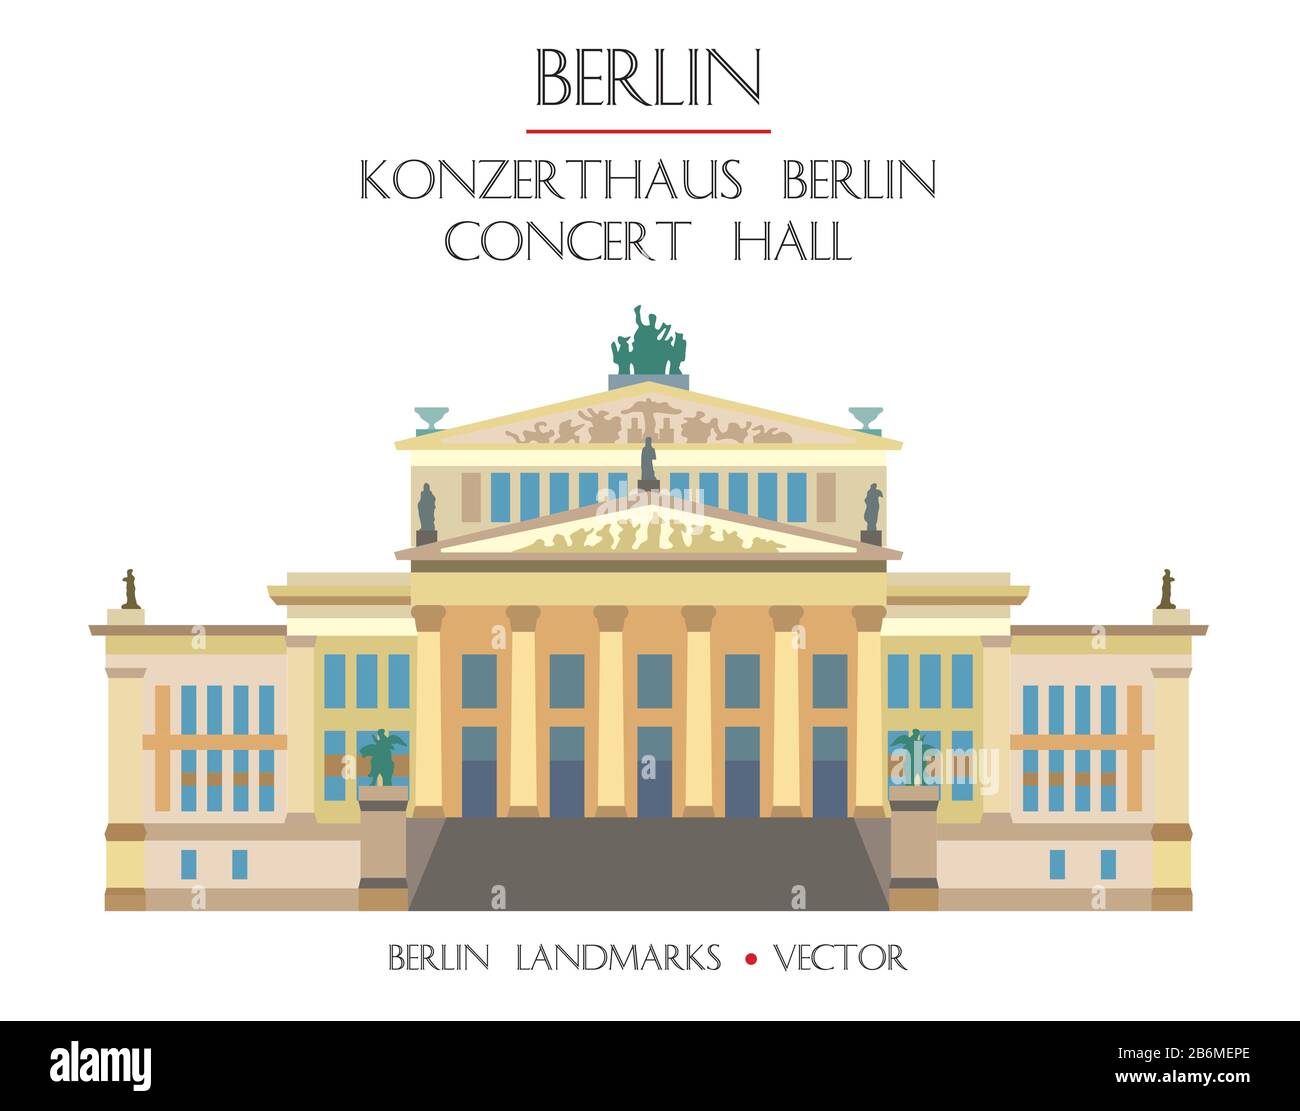 Vue de face du Vector Сoncert hall coloré (Konzerthaus Berlin), célèbre monument de Berlin, Allemagne. Illustration plate vectorielle isolée sur fond blanc Illustration de Vecteur